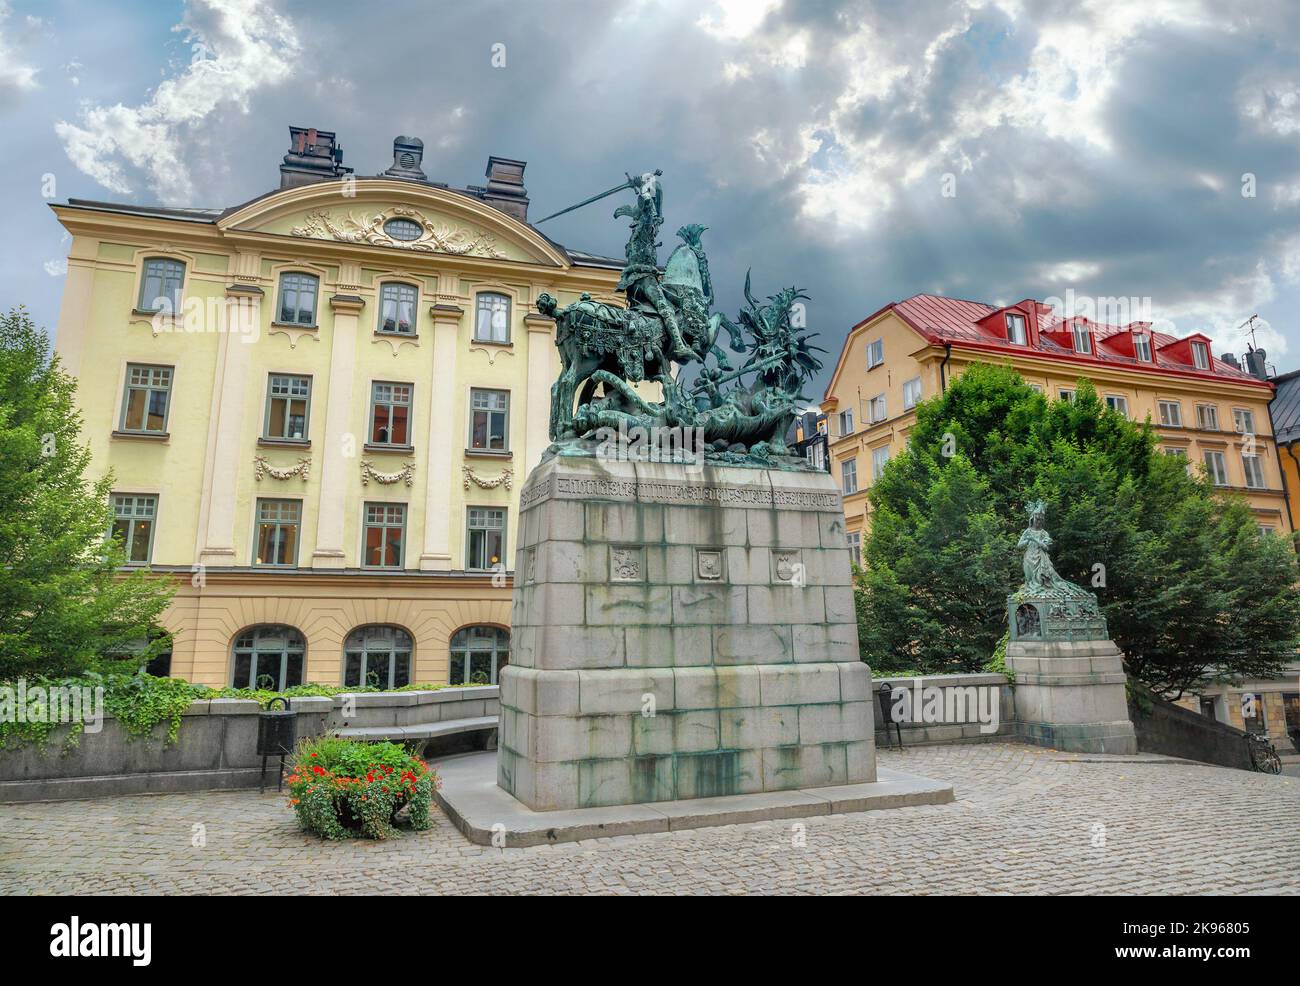 Stadtbild mit Bronzestatue von St. George und Drachen in der Altstadt. Stockholm, Schweden Stockfoto